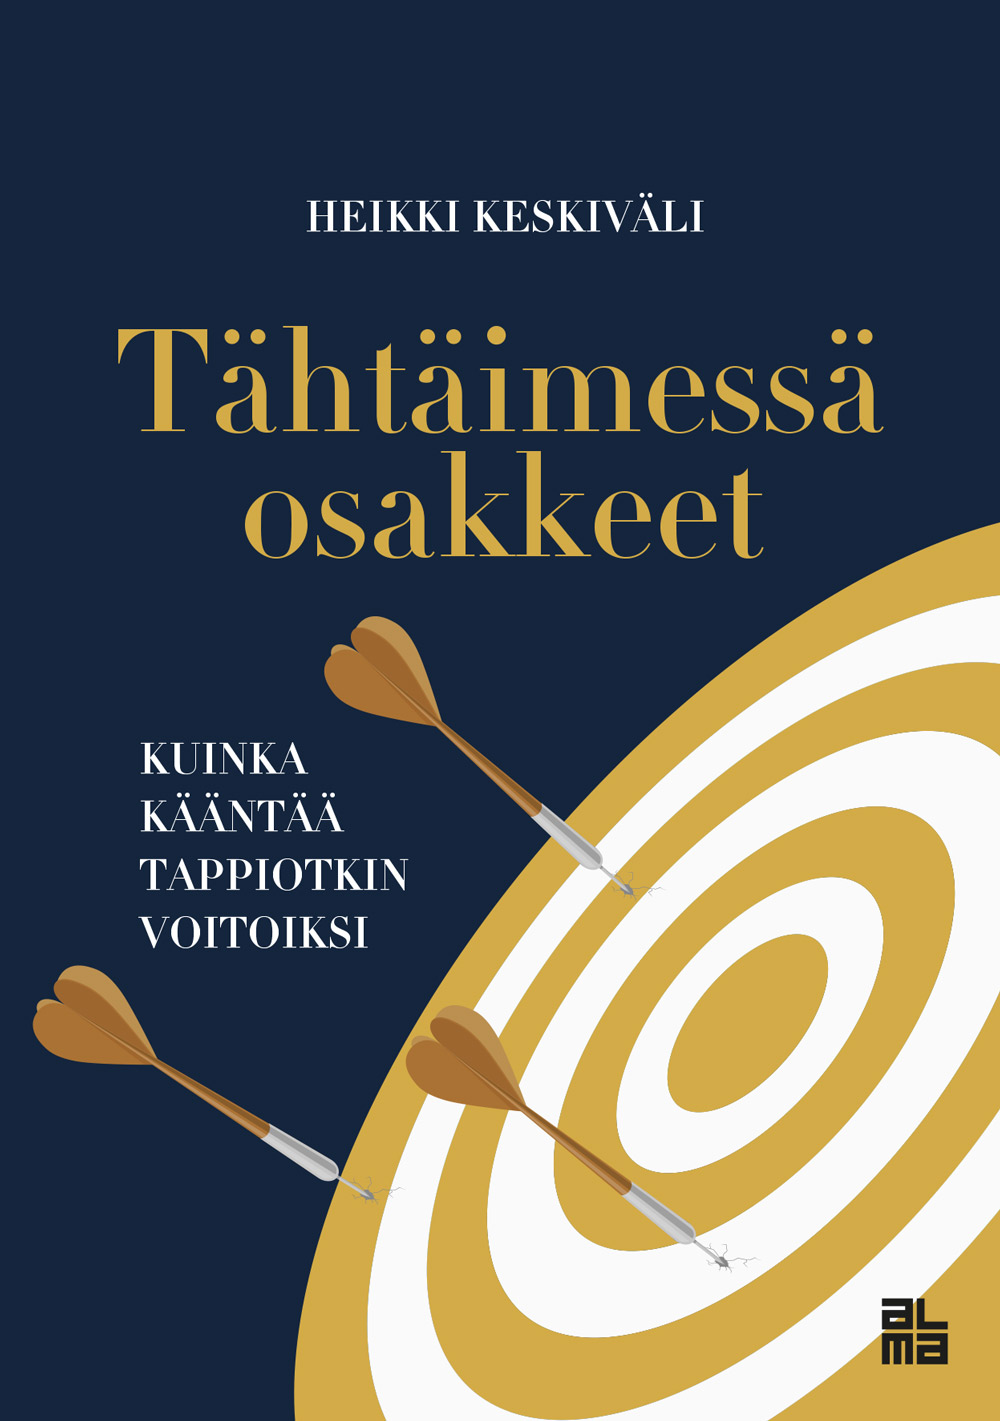 Keskiväli, Heikki - Tähtäimessä osakkeet: Kuinka kääntää tappiotkin voitoiksi, e-kirja